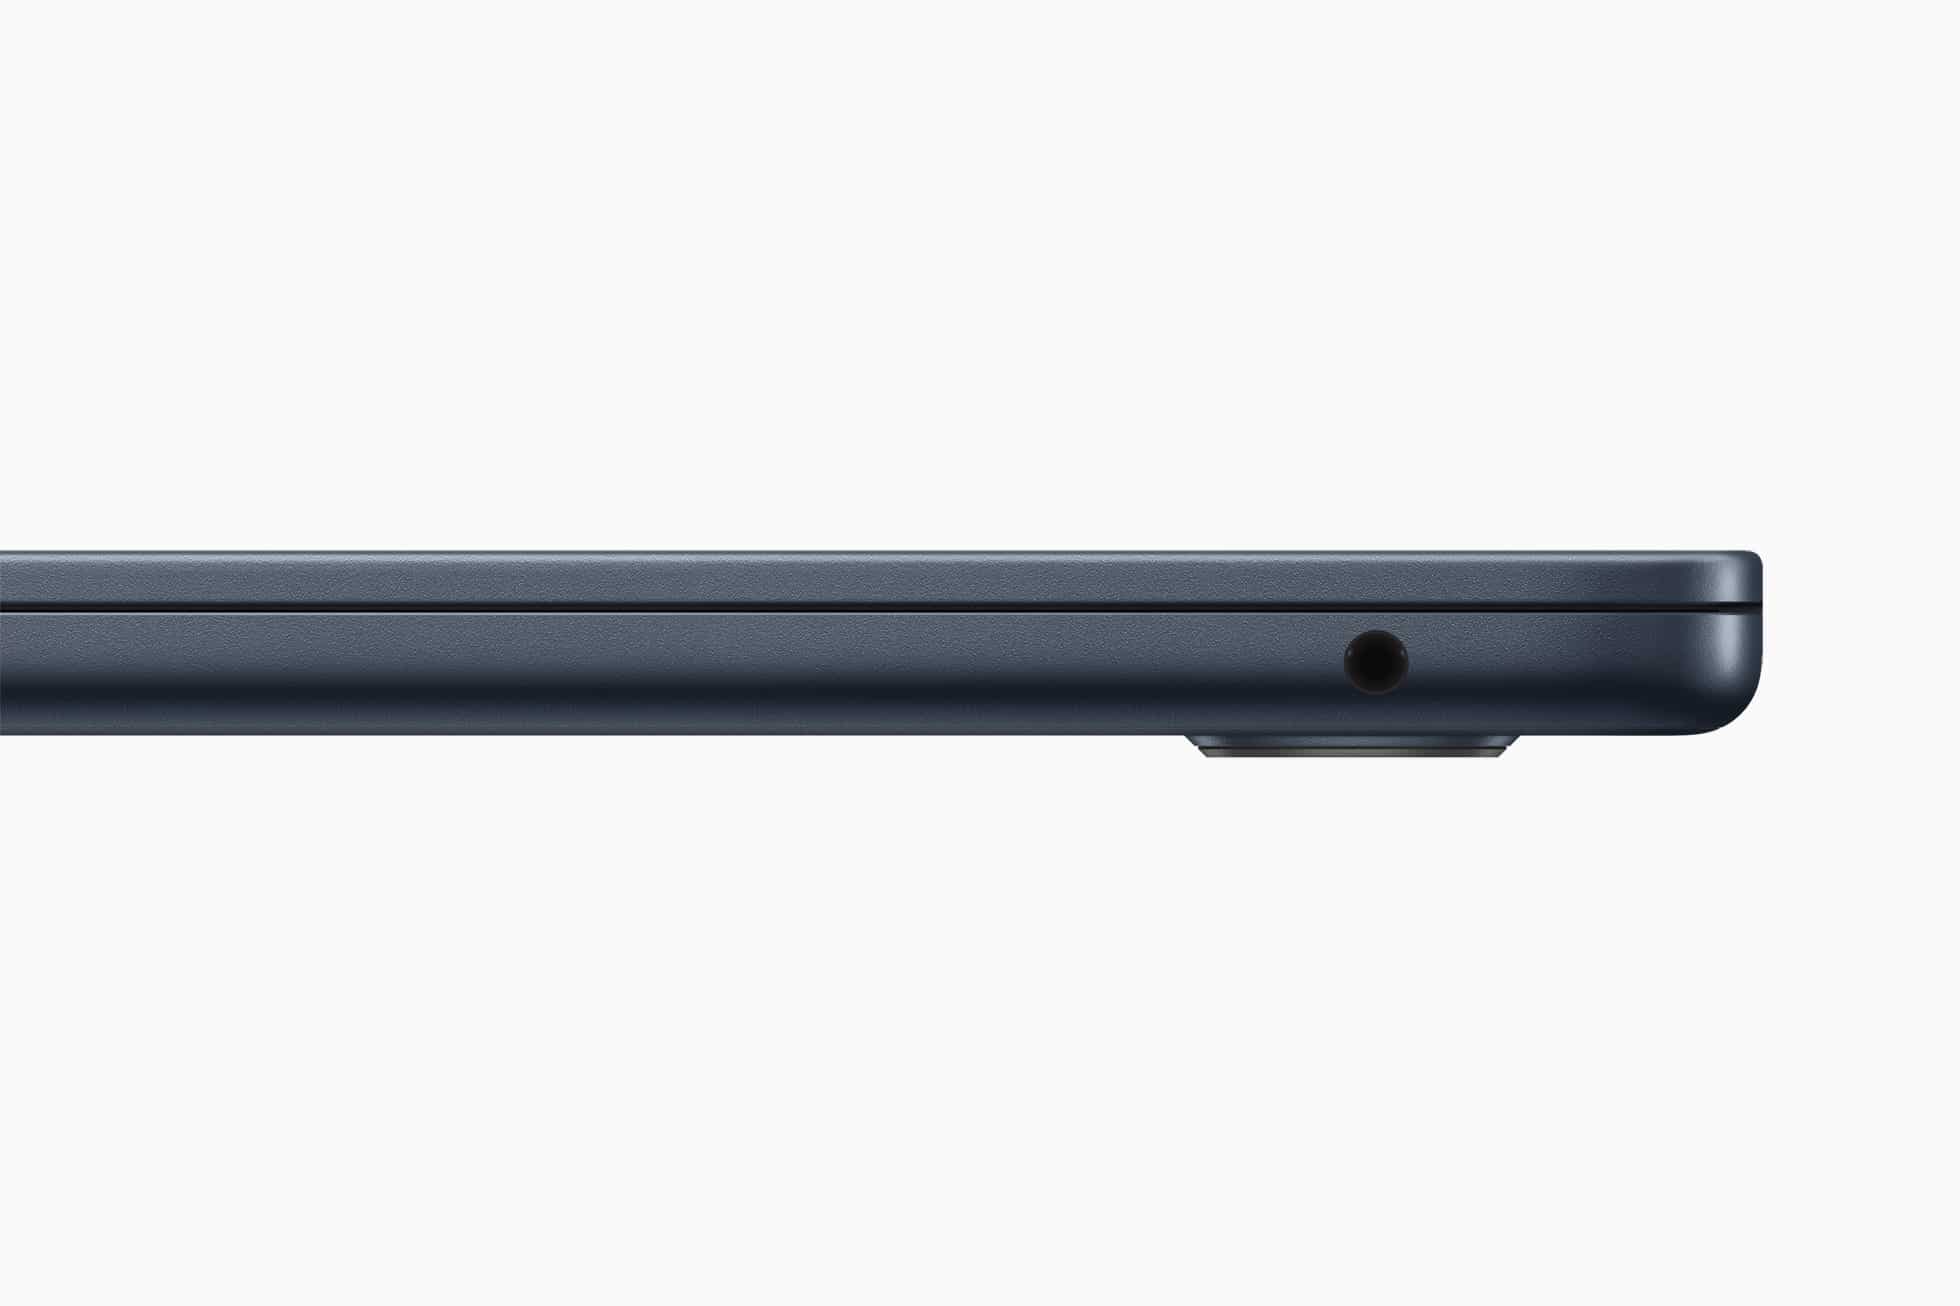 MacBook Air 2022 mới ra mắt trang bị chip M2 cùng với thay đổi thiết kế, màn hình tai thỏ và sạc MagSafe,...